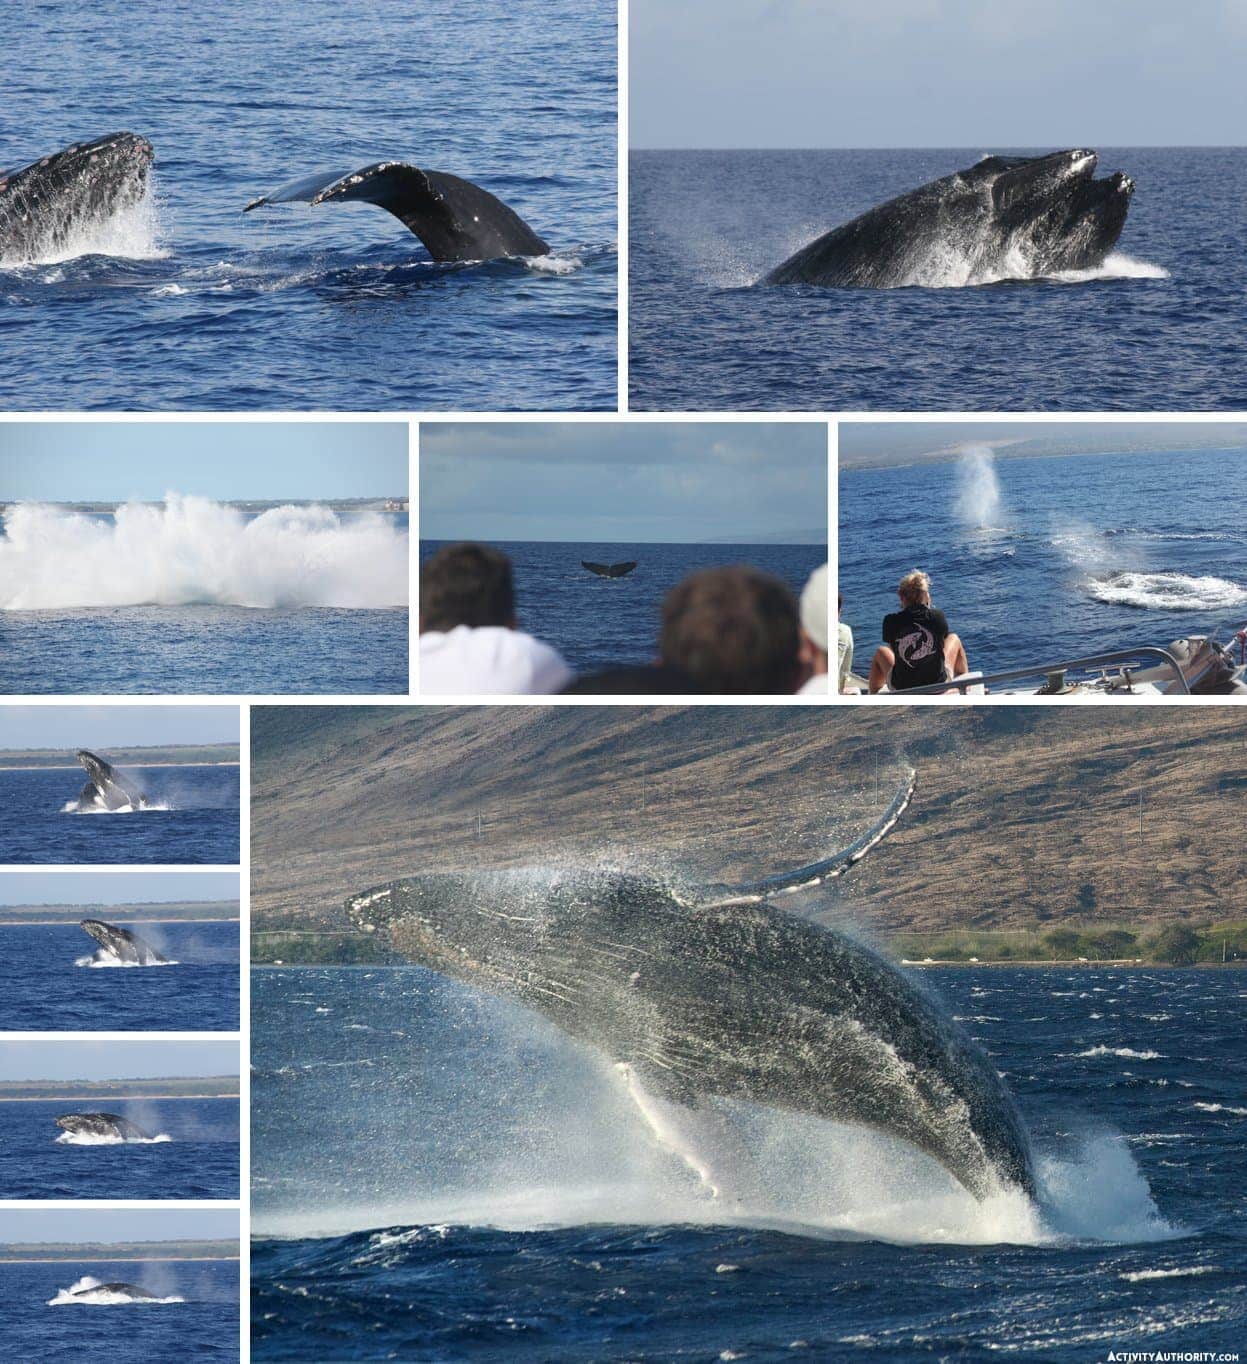 Maui whales